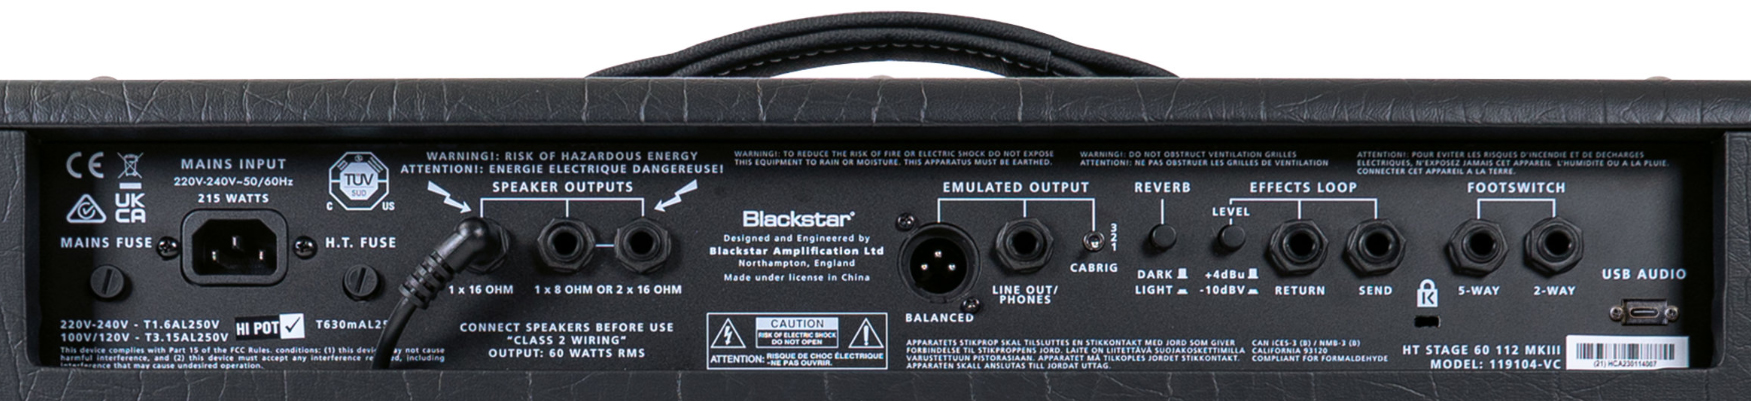 Blackstar Ht Venue Stage 60 112 Mkiii 60w 1x12 El34 - Combo amplificador para guitarra eléctrica - Variation 4